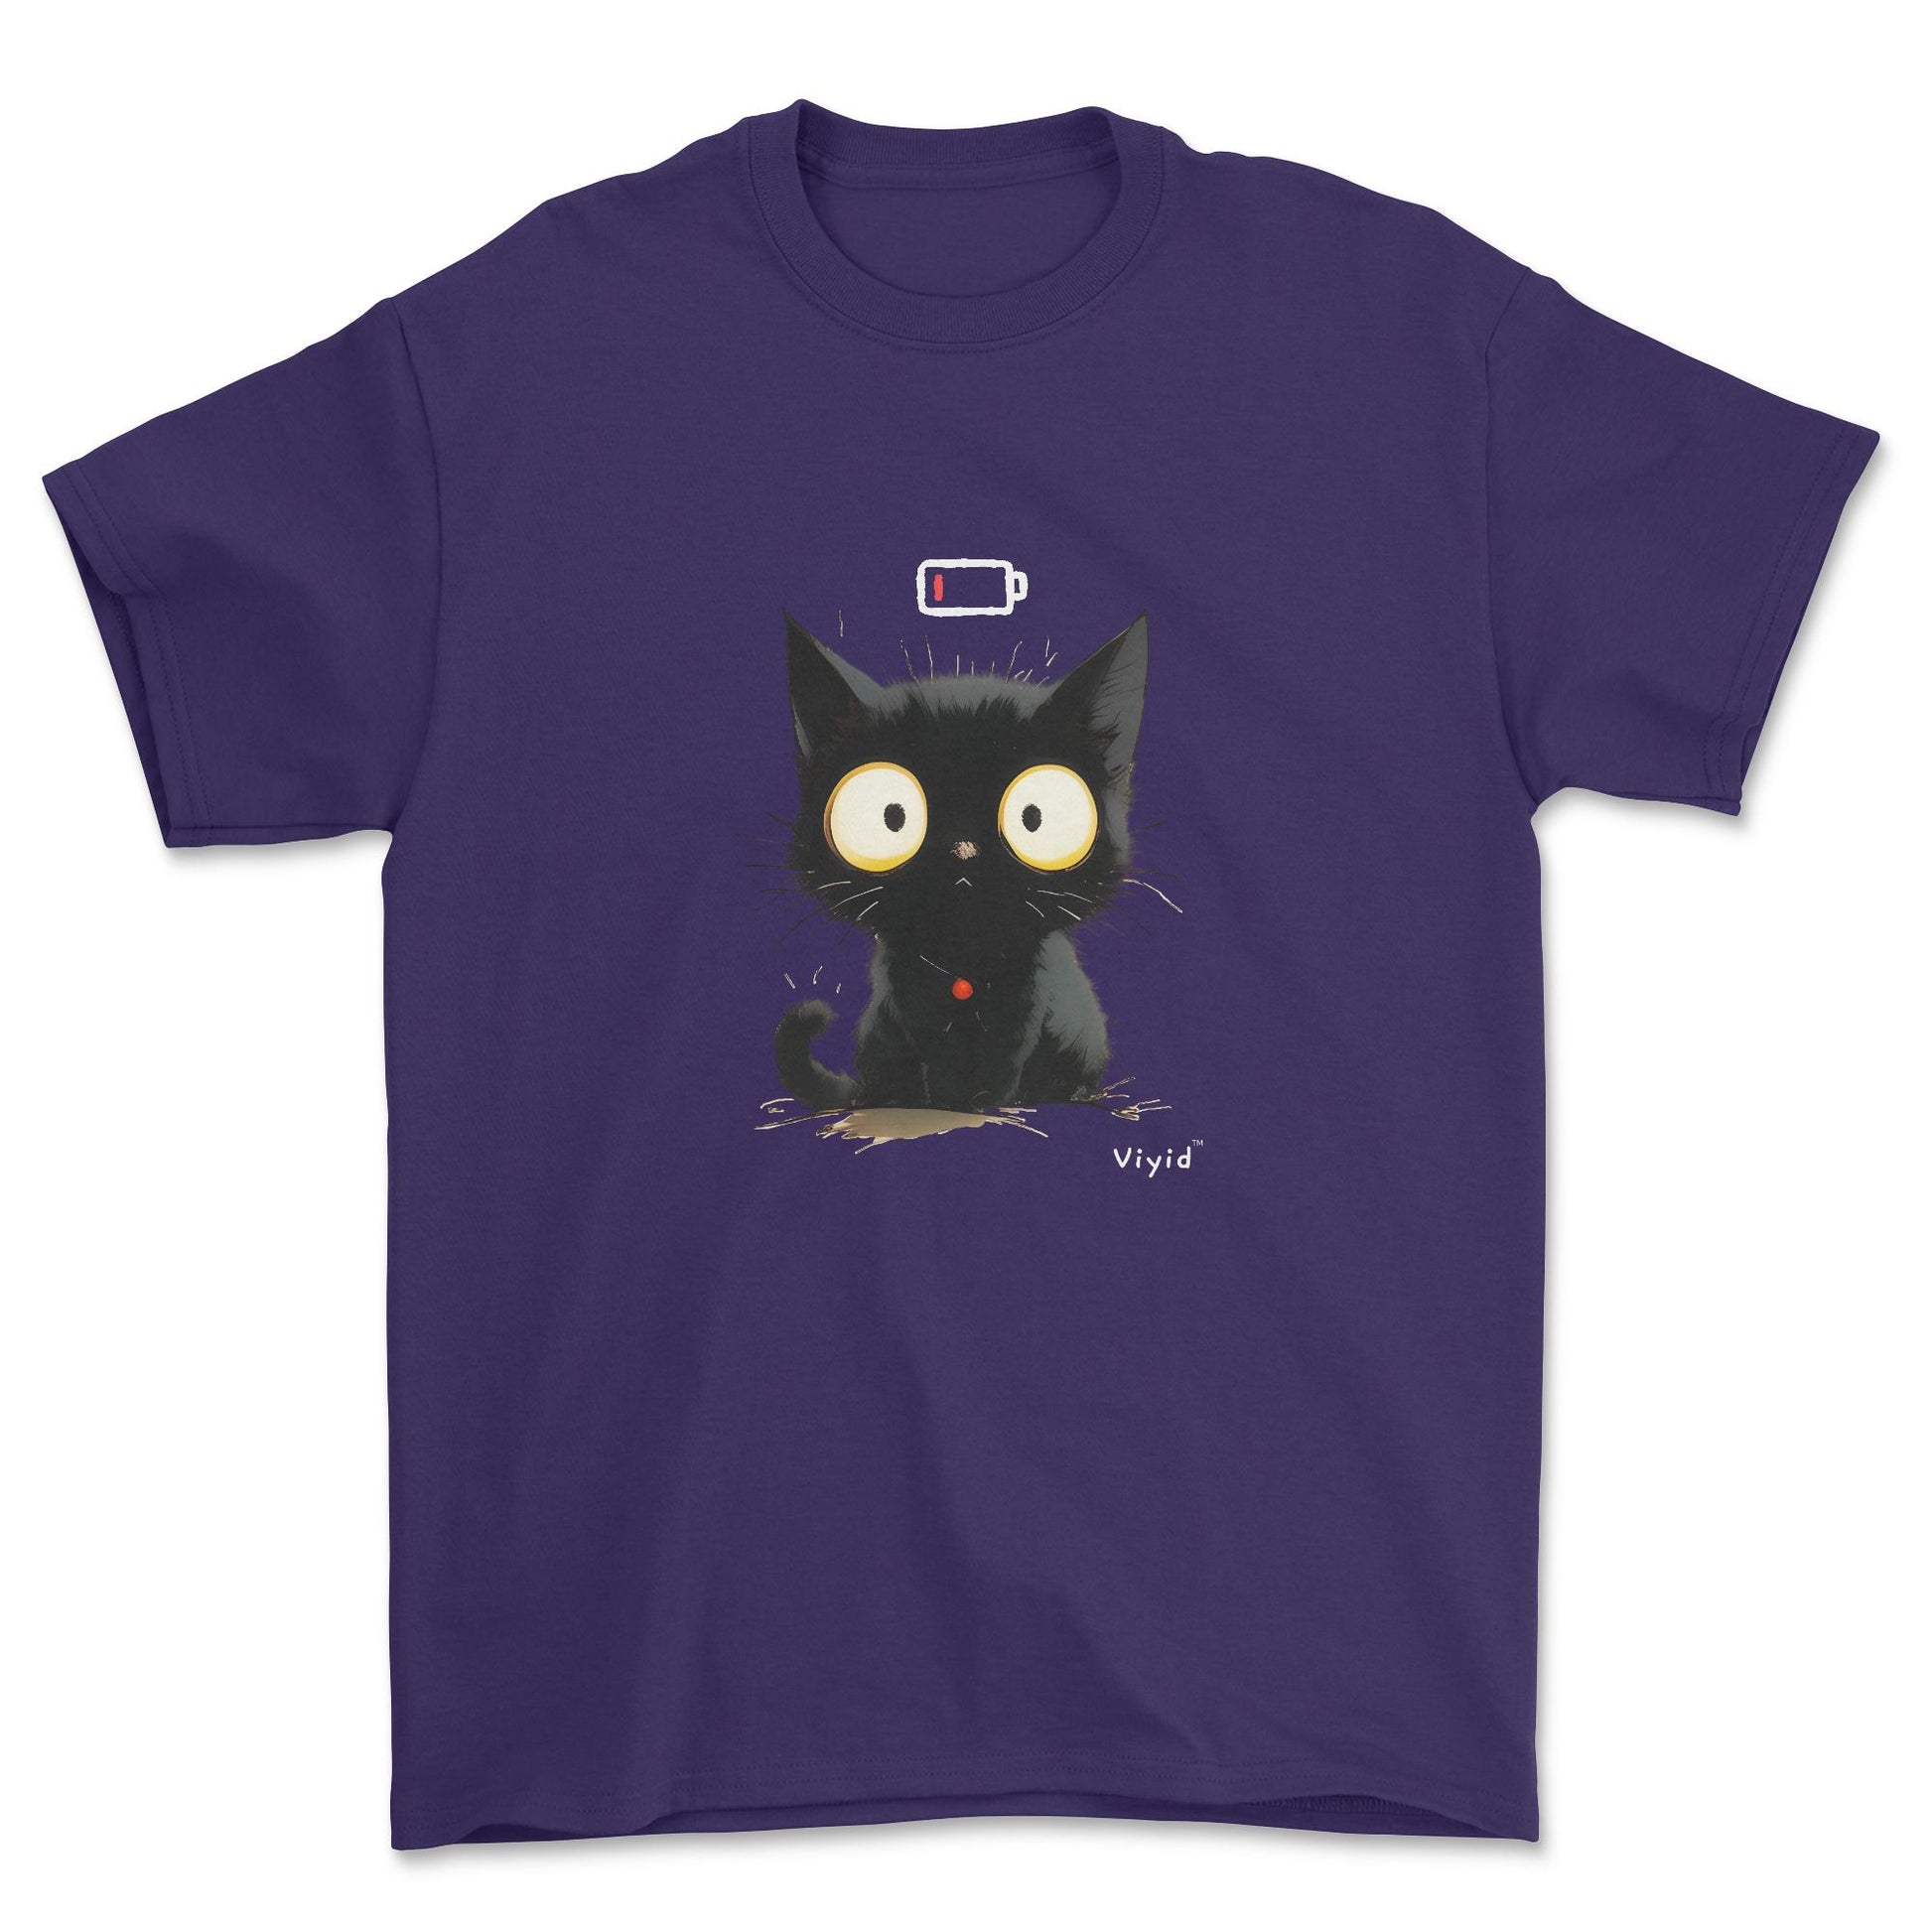 Low battery black cat adult t-shirt purple